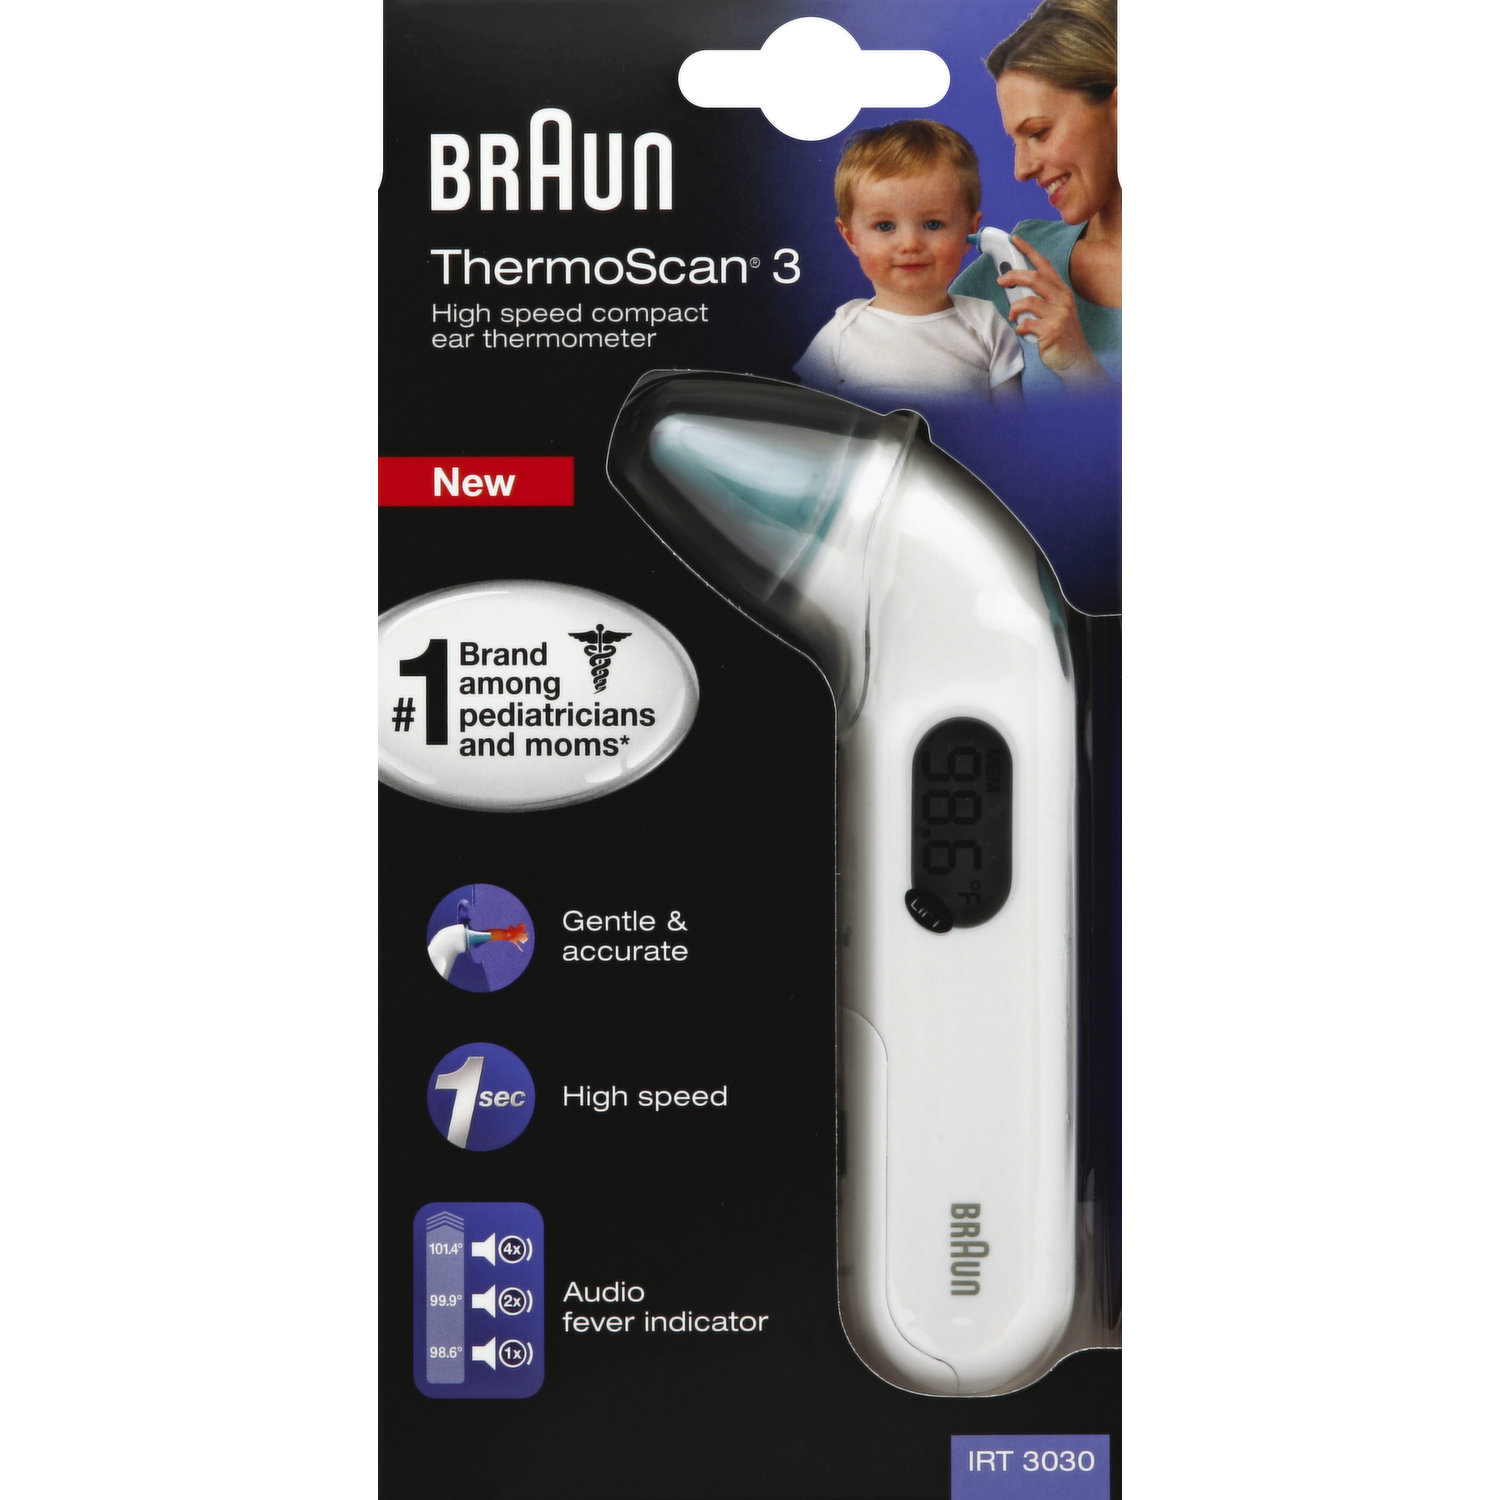 Braun thermoscan 3